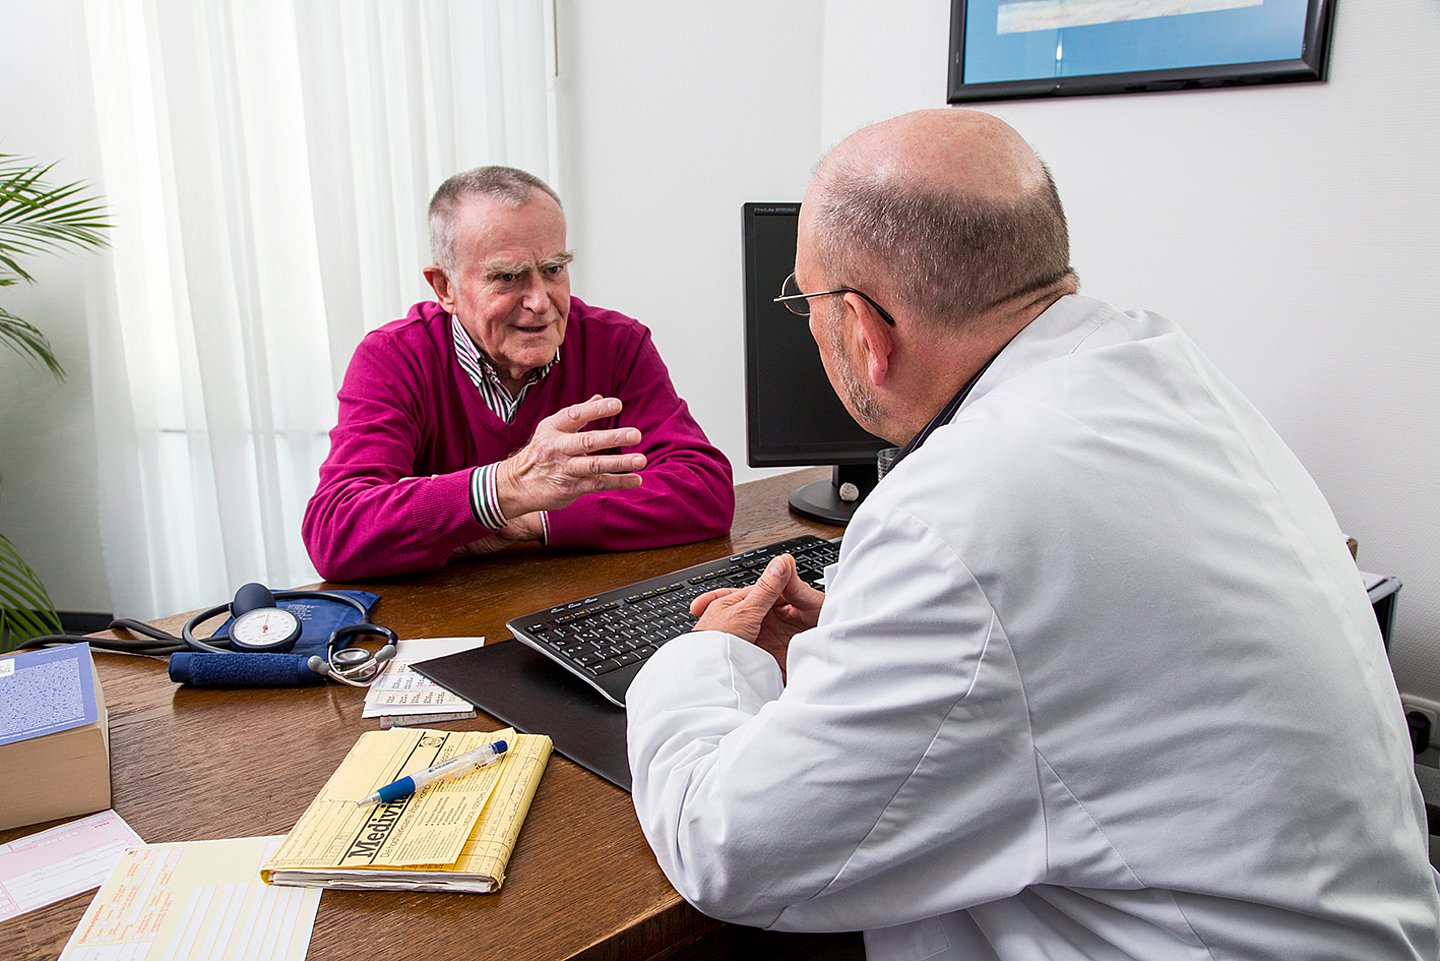 Foto: Ein Gespräch zwischen Arzt und Patient.